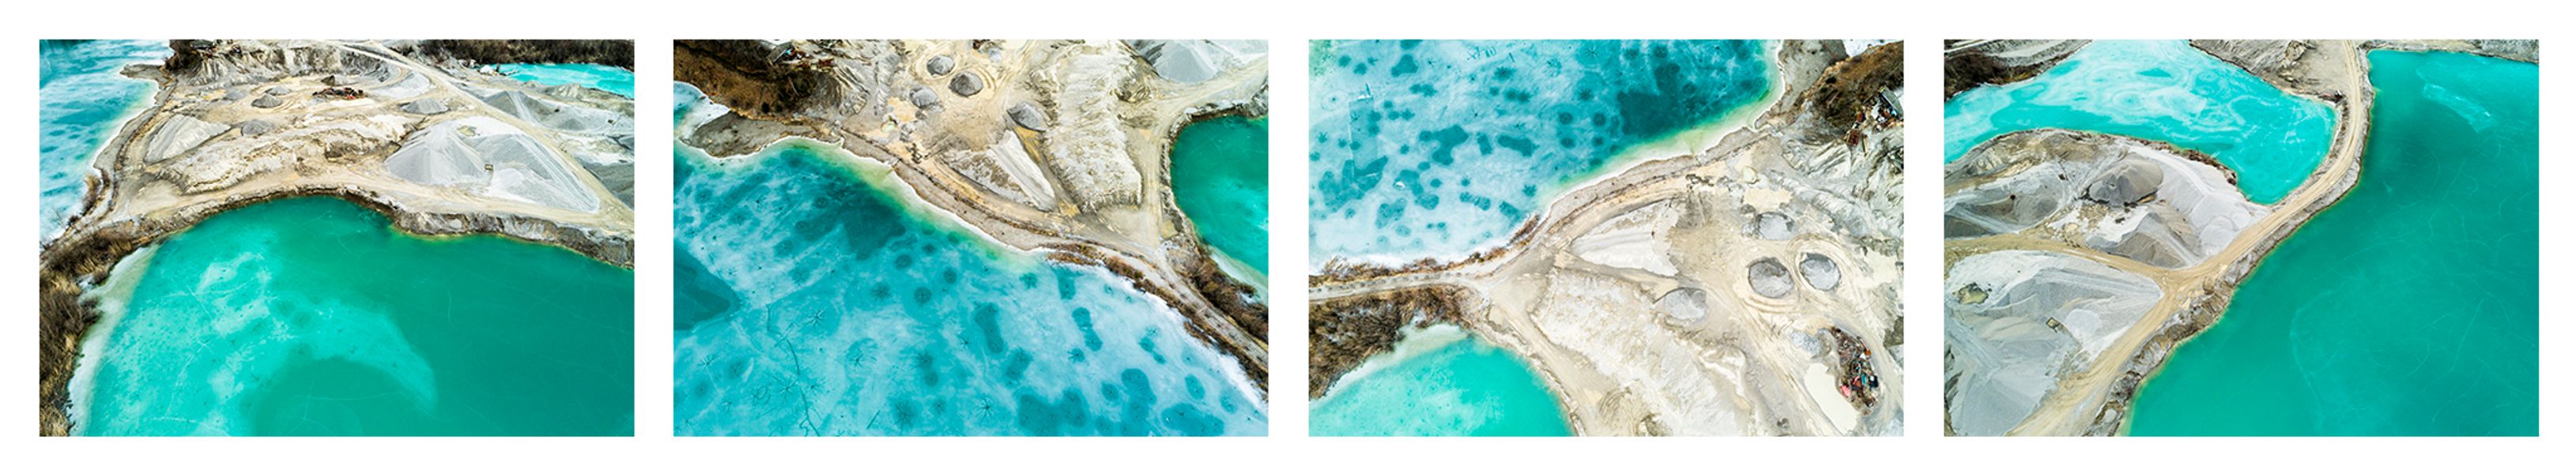 Stefan Kuhn's "Lakeshore Operations / Winter Serie #6" Drohnen Fotografie zeigt ein Seeufer mit 4 Motiven in einem Bild.